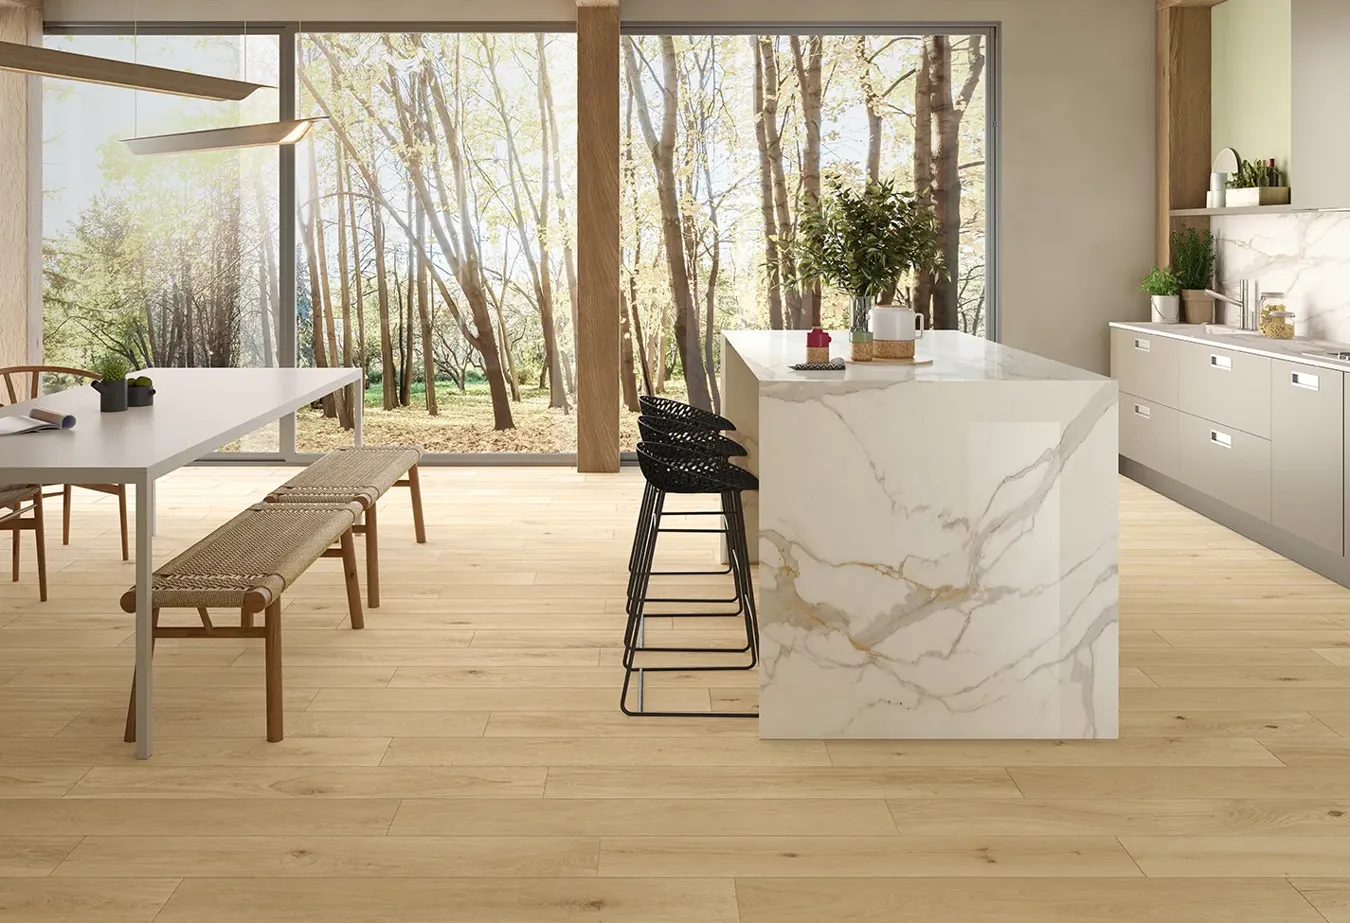 Cucina luminosa con pavimento effetto legno, isola centrale e piano di lavoro effetto marmo bianco.